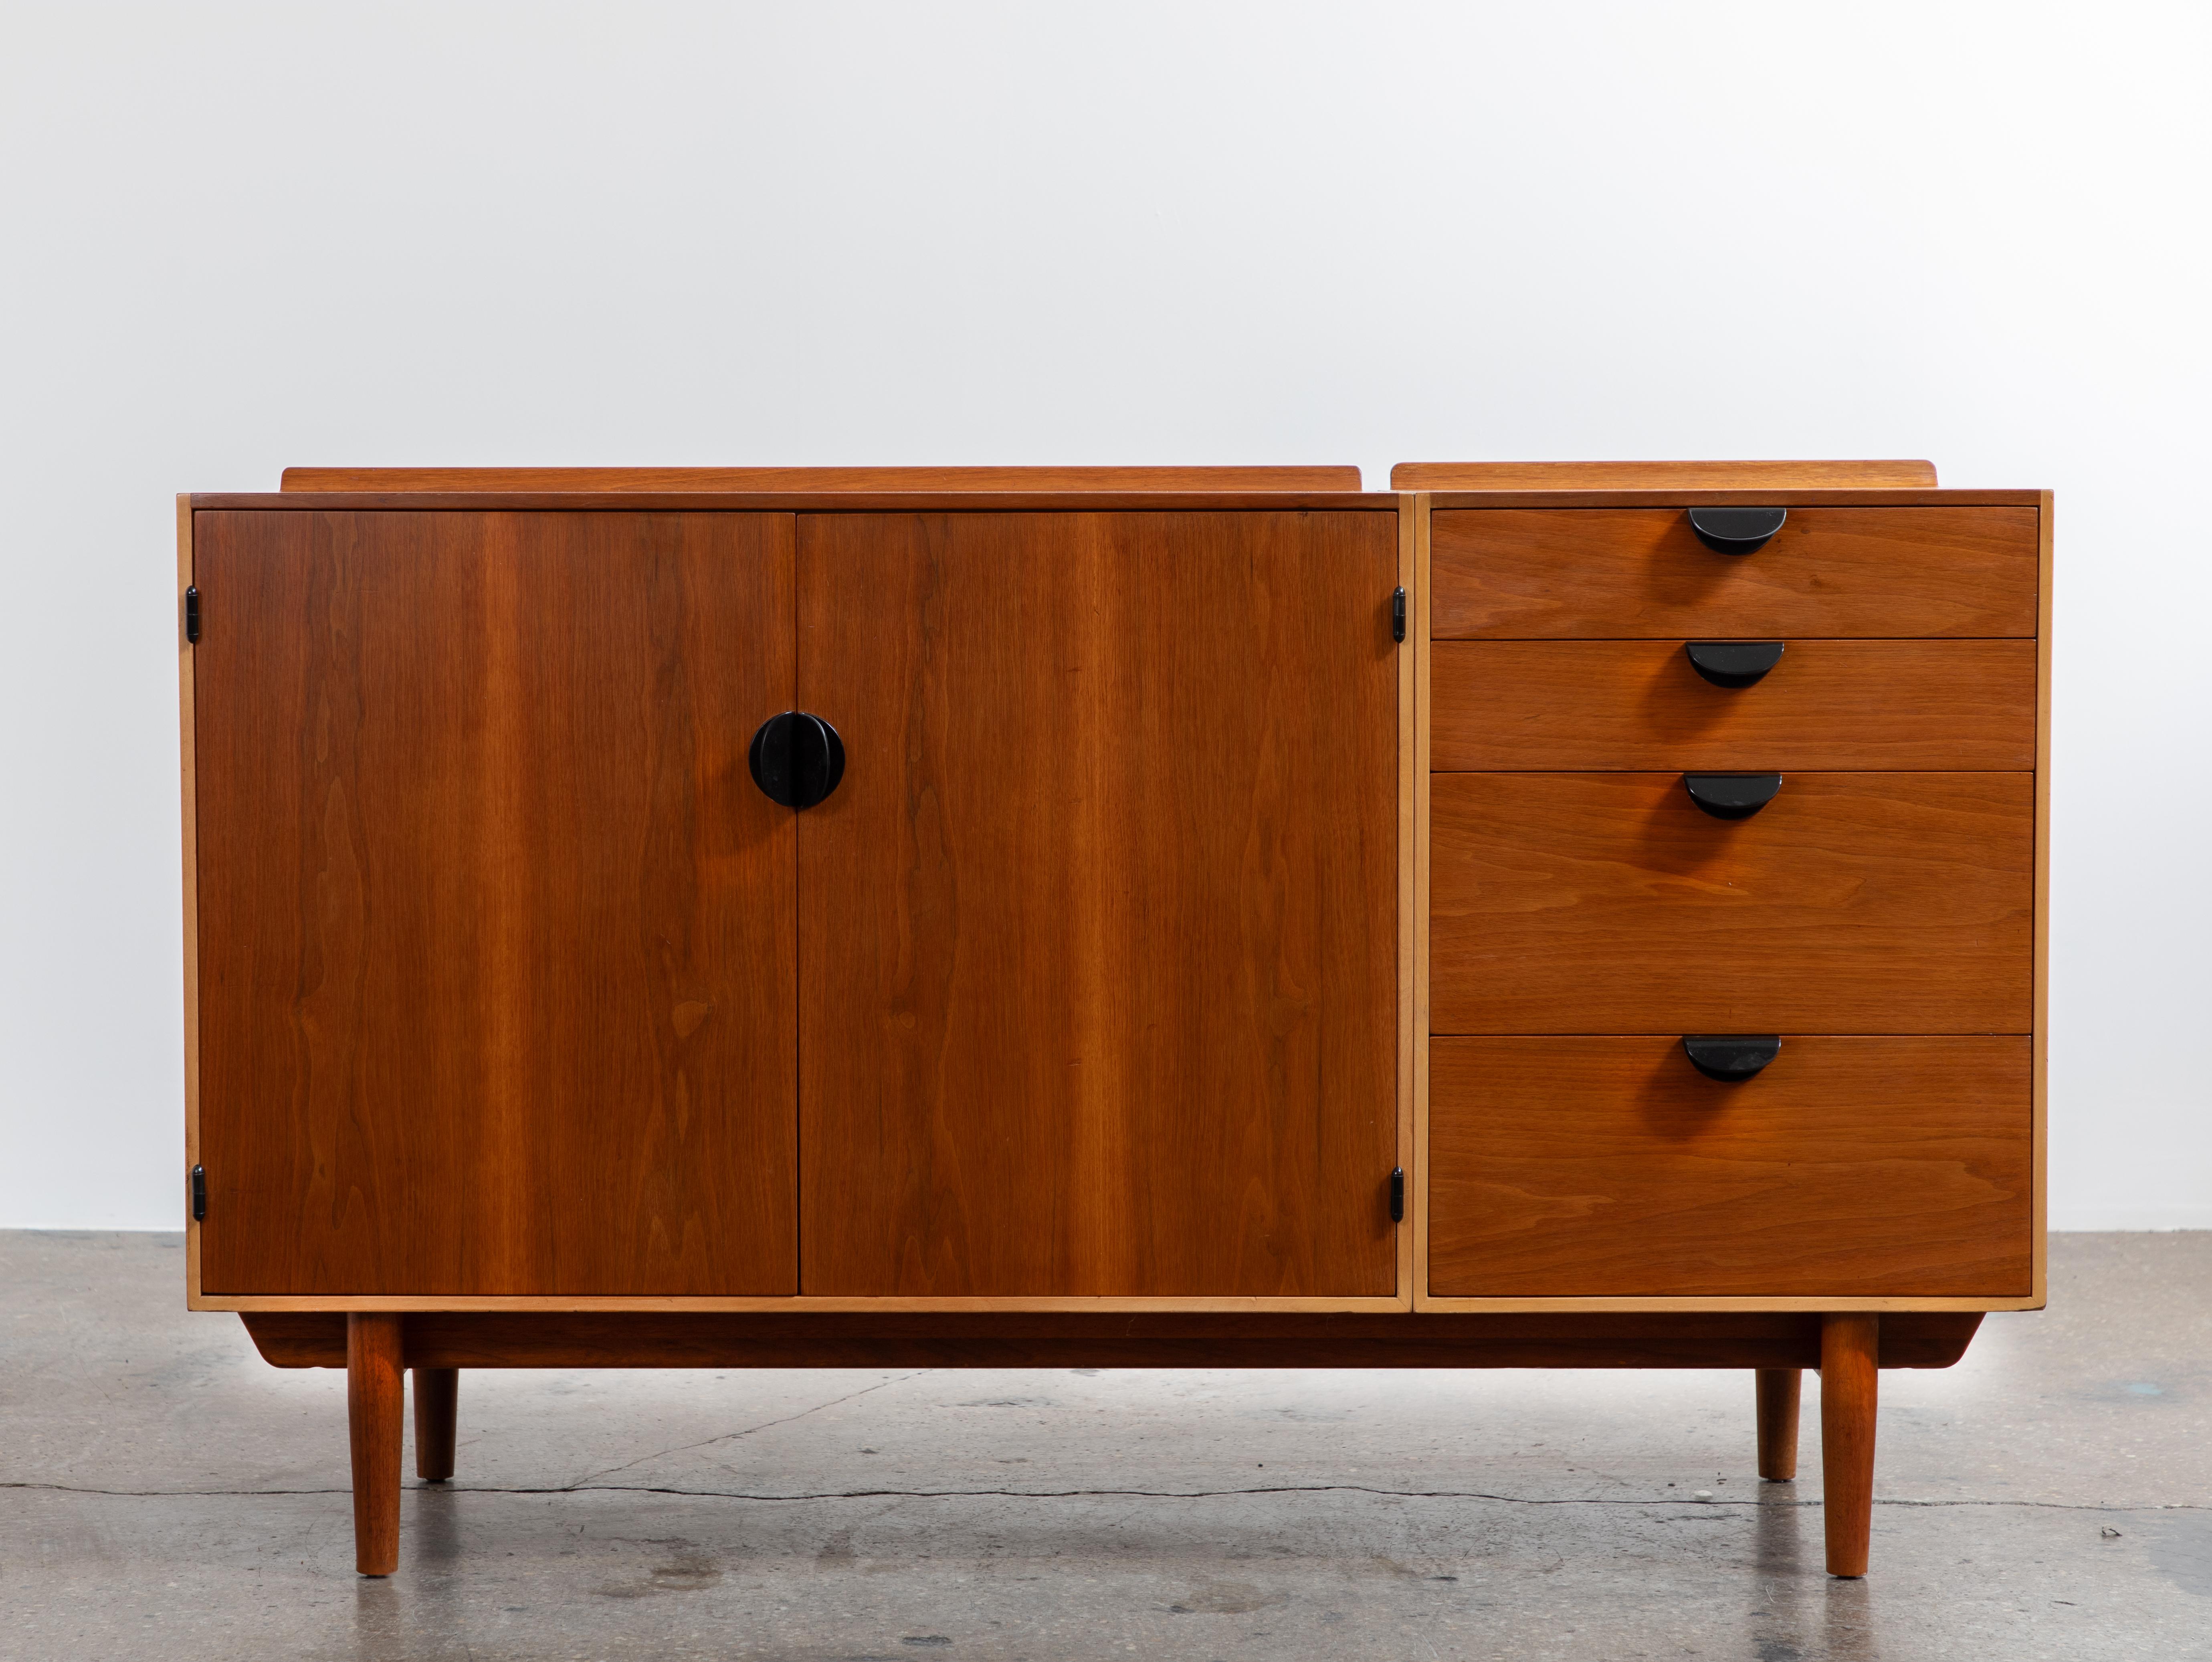 Une crédence classique, conçue par l'architecte Finn Juhls pour le célèbre fabricant américain Baker Furniture, dans le cadre de la ligne Baker Modern. Ce beau meuble présente toutes les caractéristiques du designer danois,  avec ses lignes fluides,